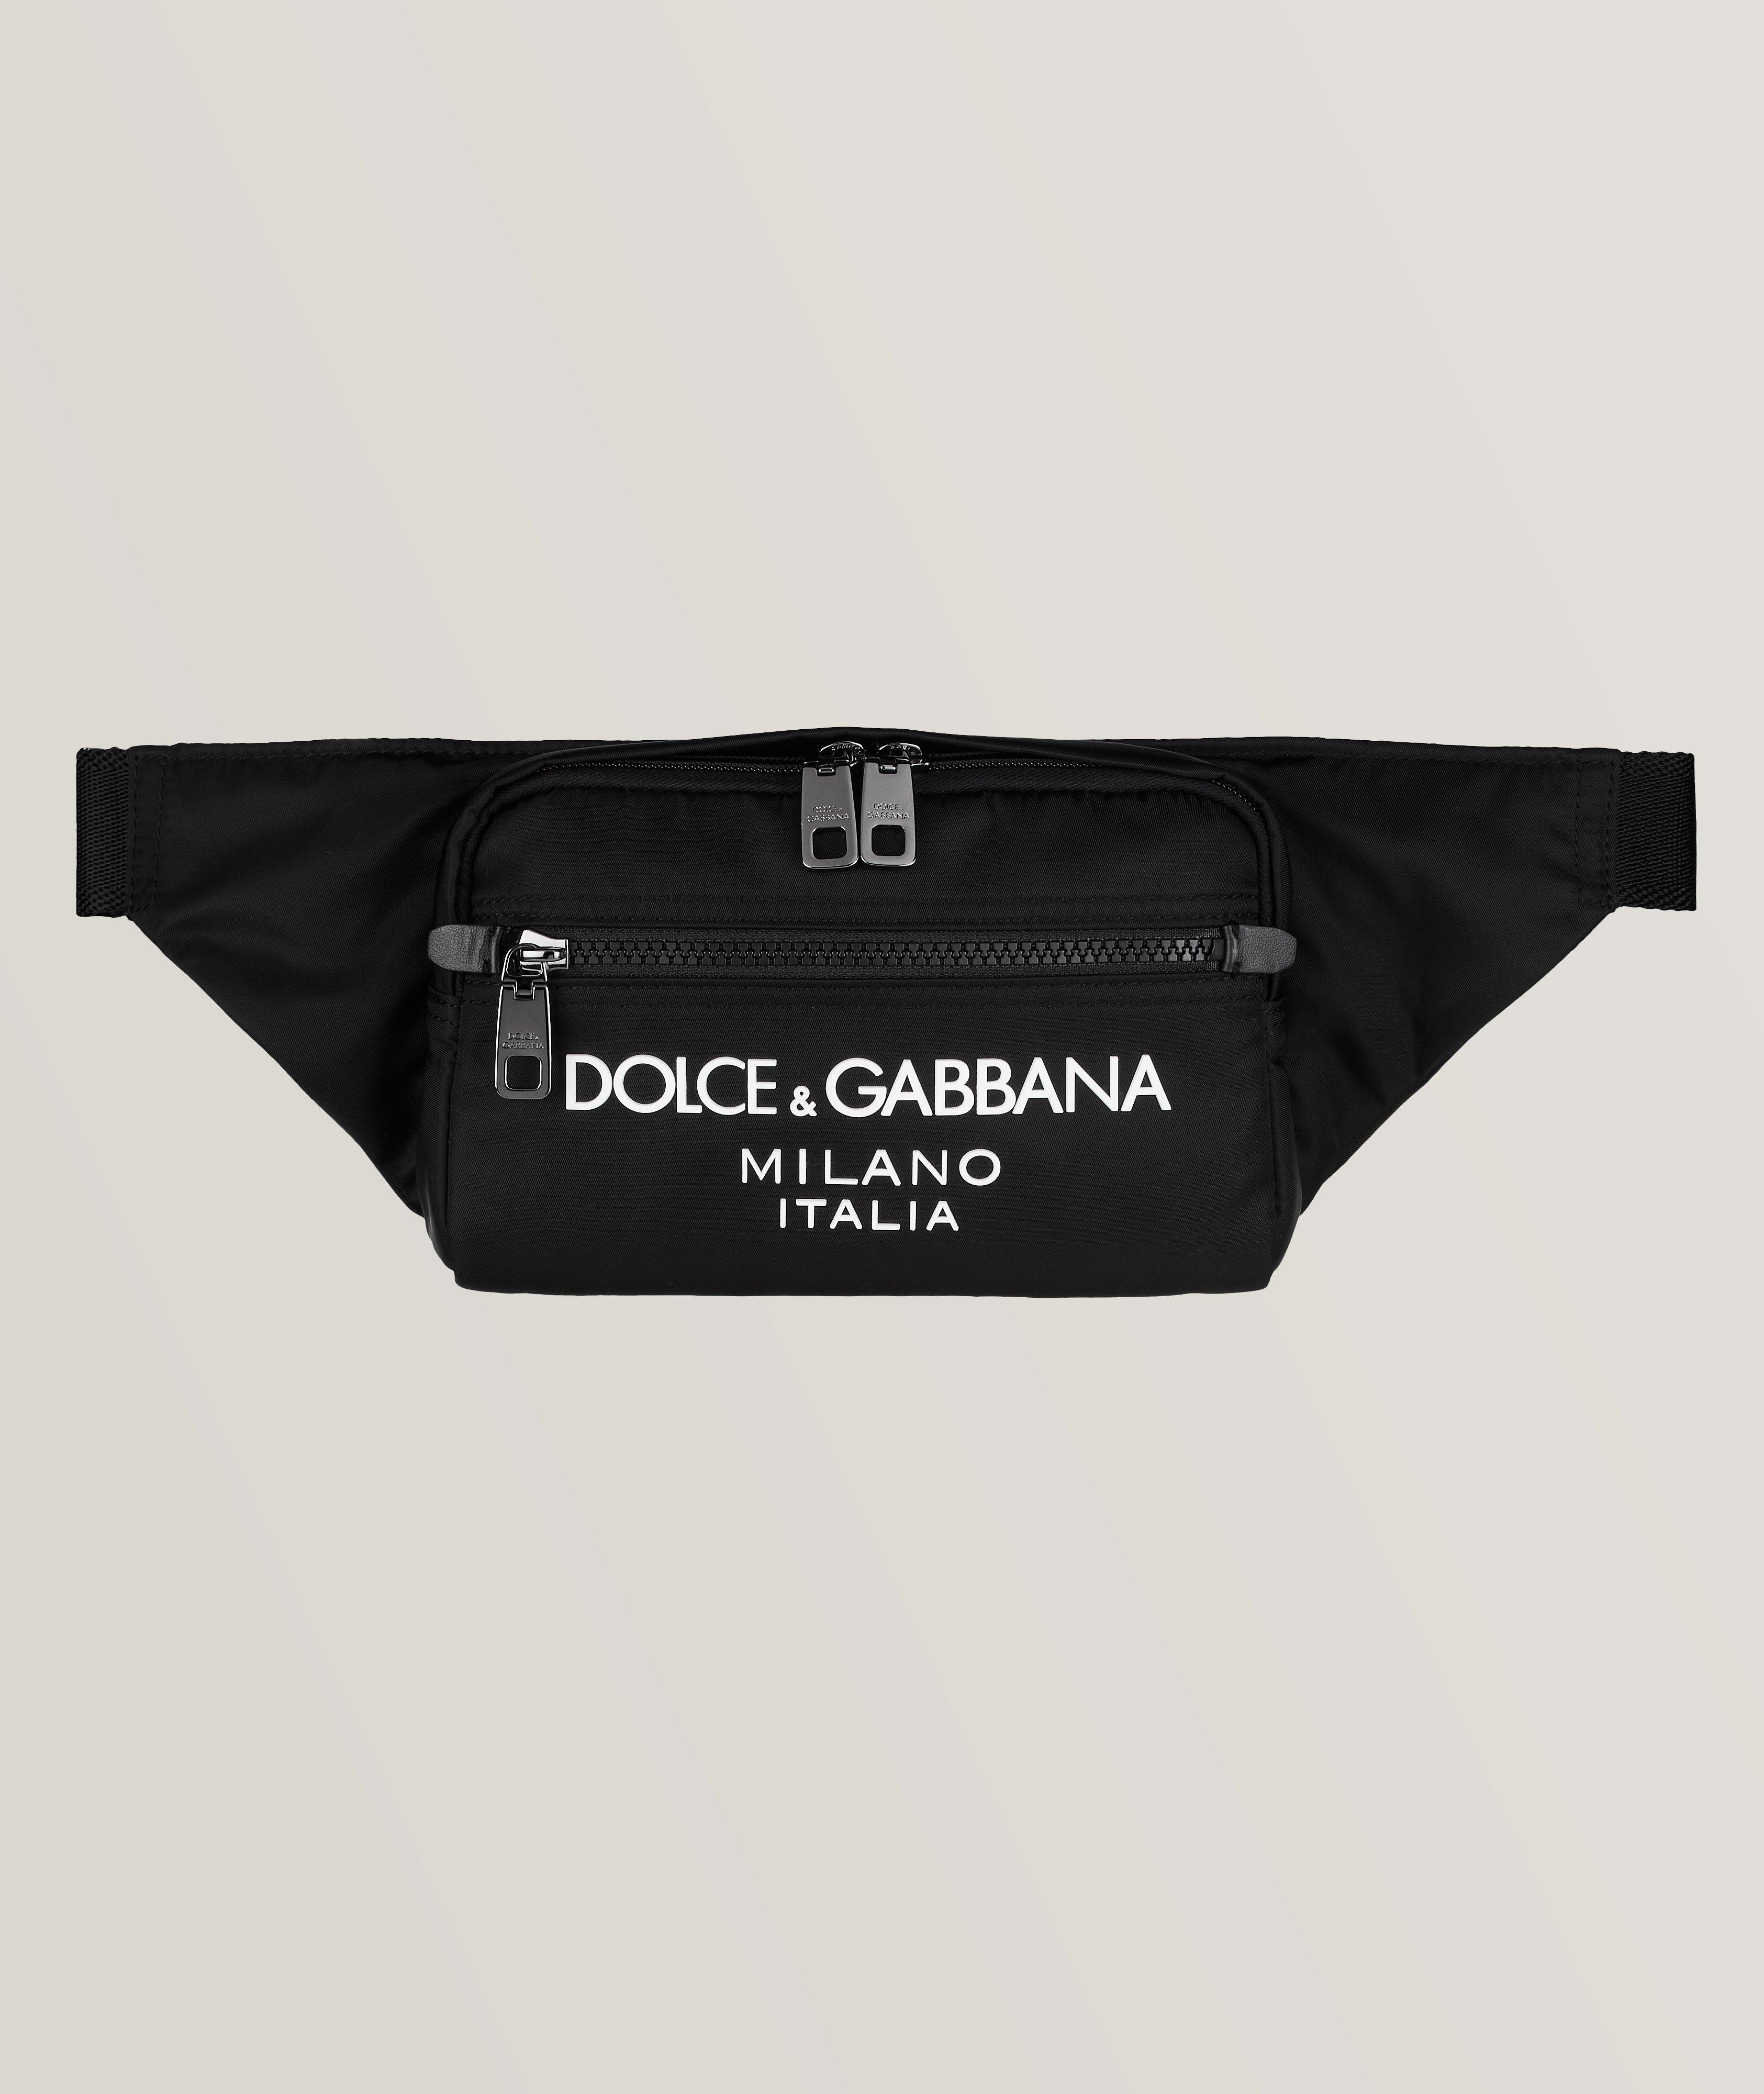 Dolce & Gabbana Logo Lettering Adjustable Belt Bag | Bags & Cases ...